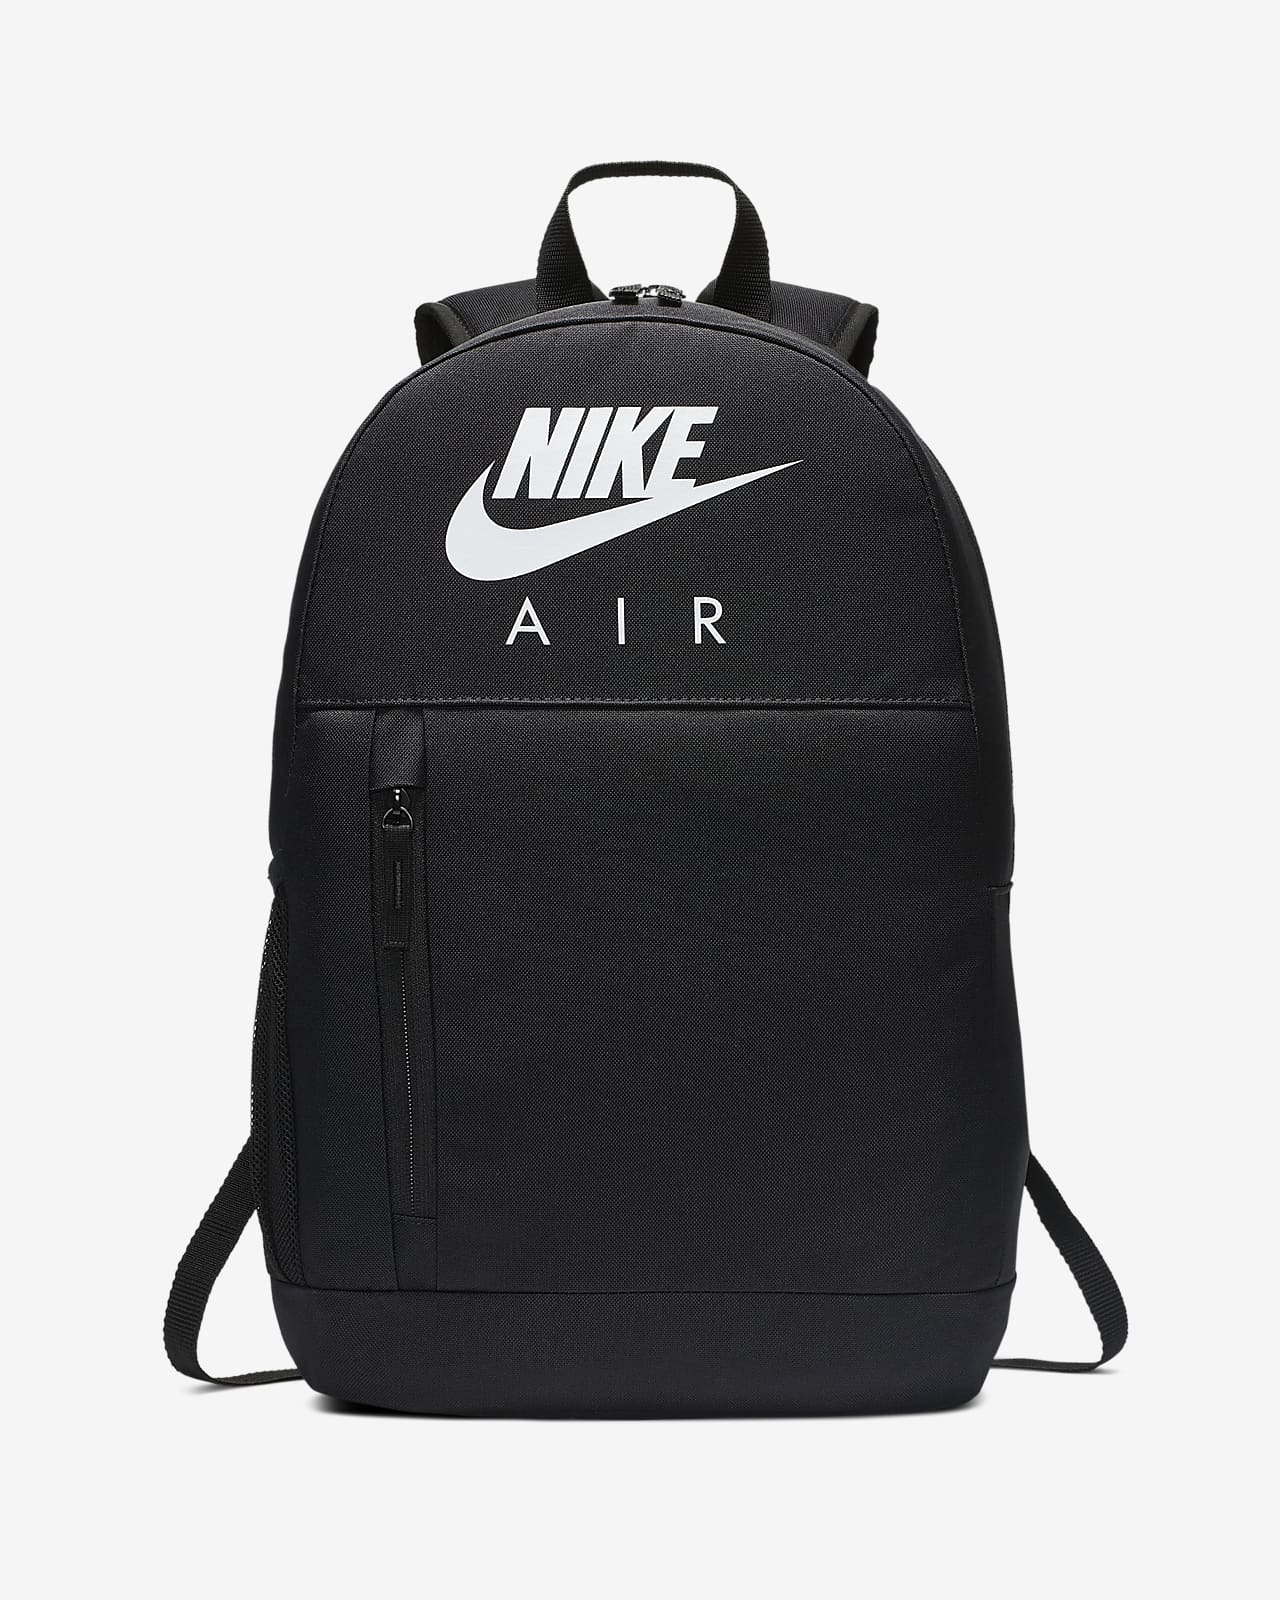 backpack nike air